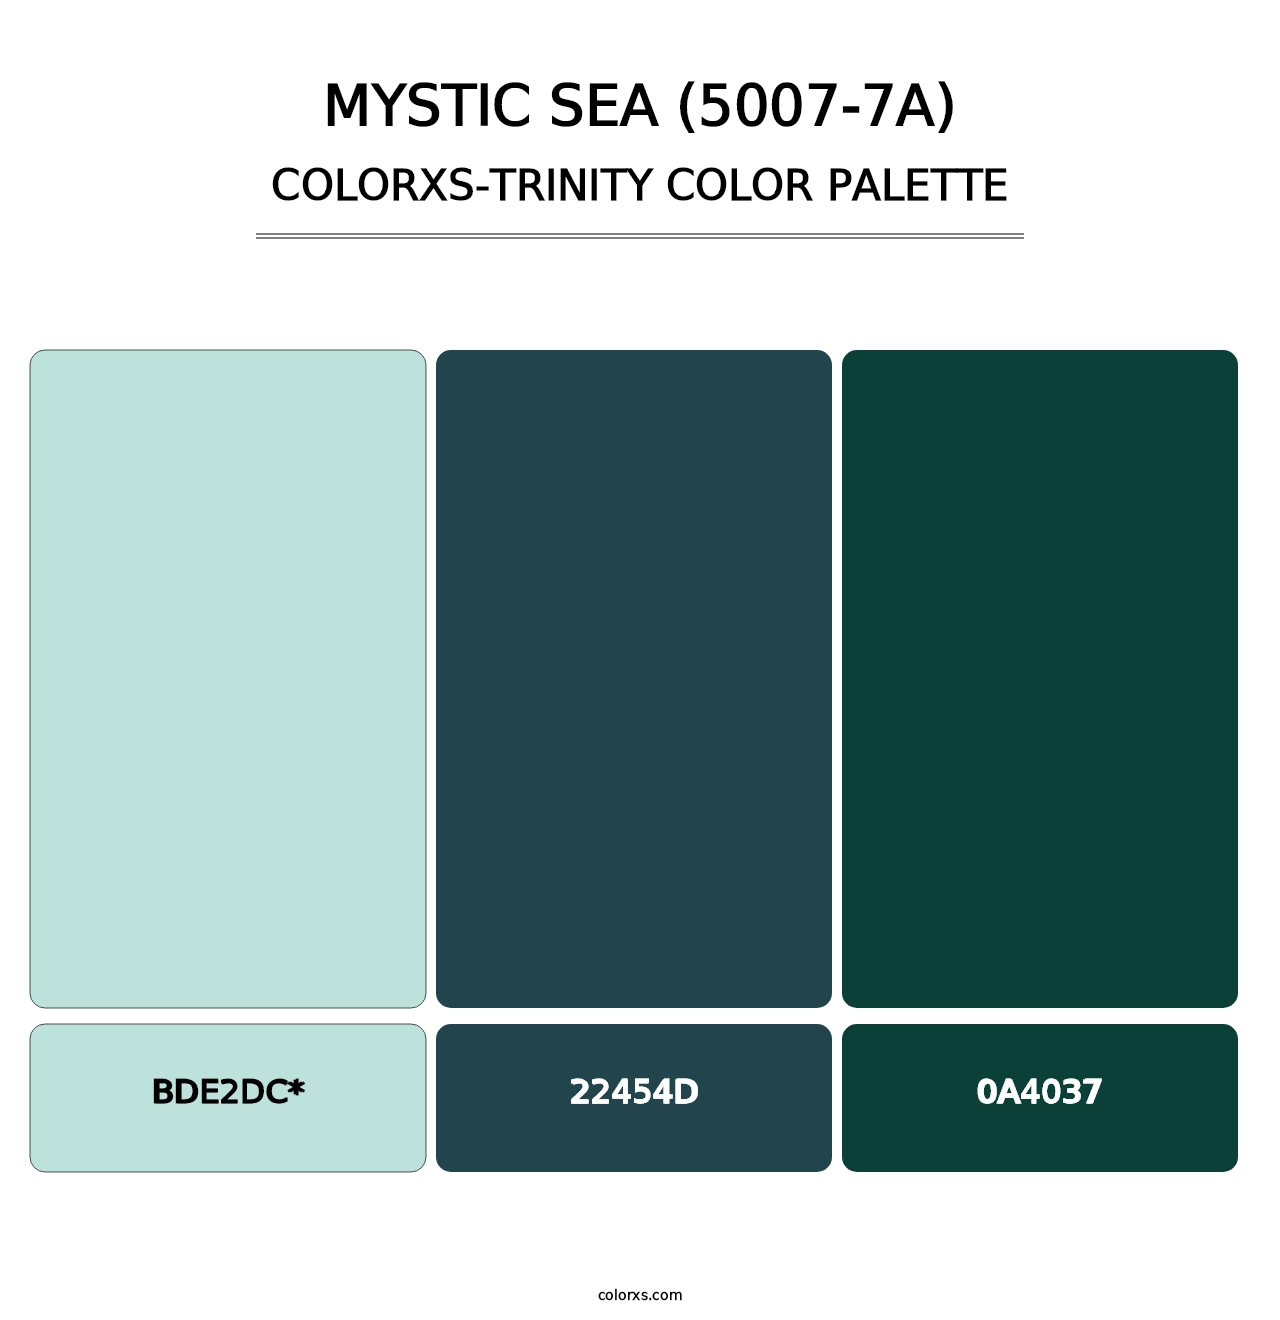 Mystic Sea (5007-7A) - Colorxs Trinity Palette